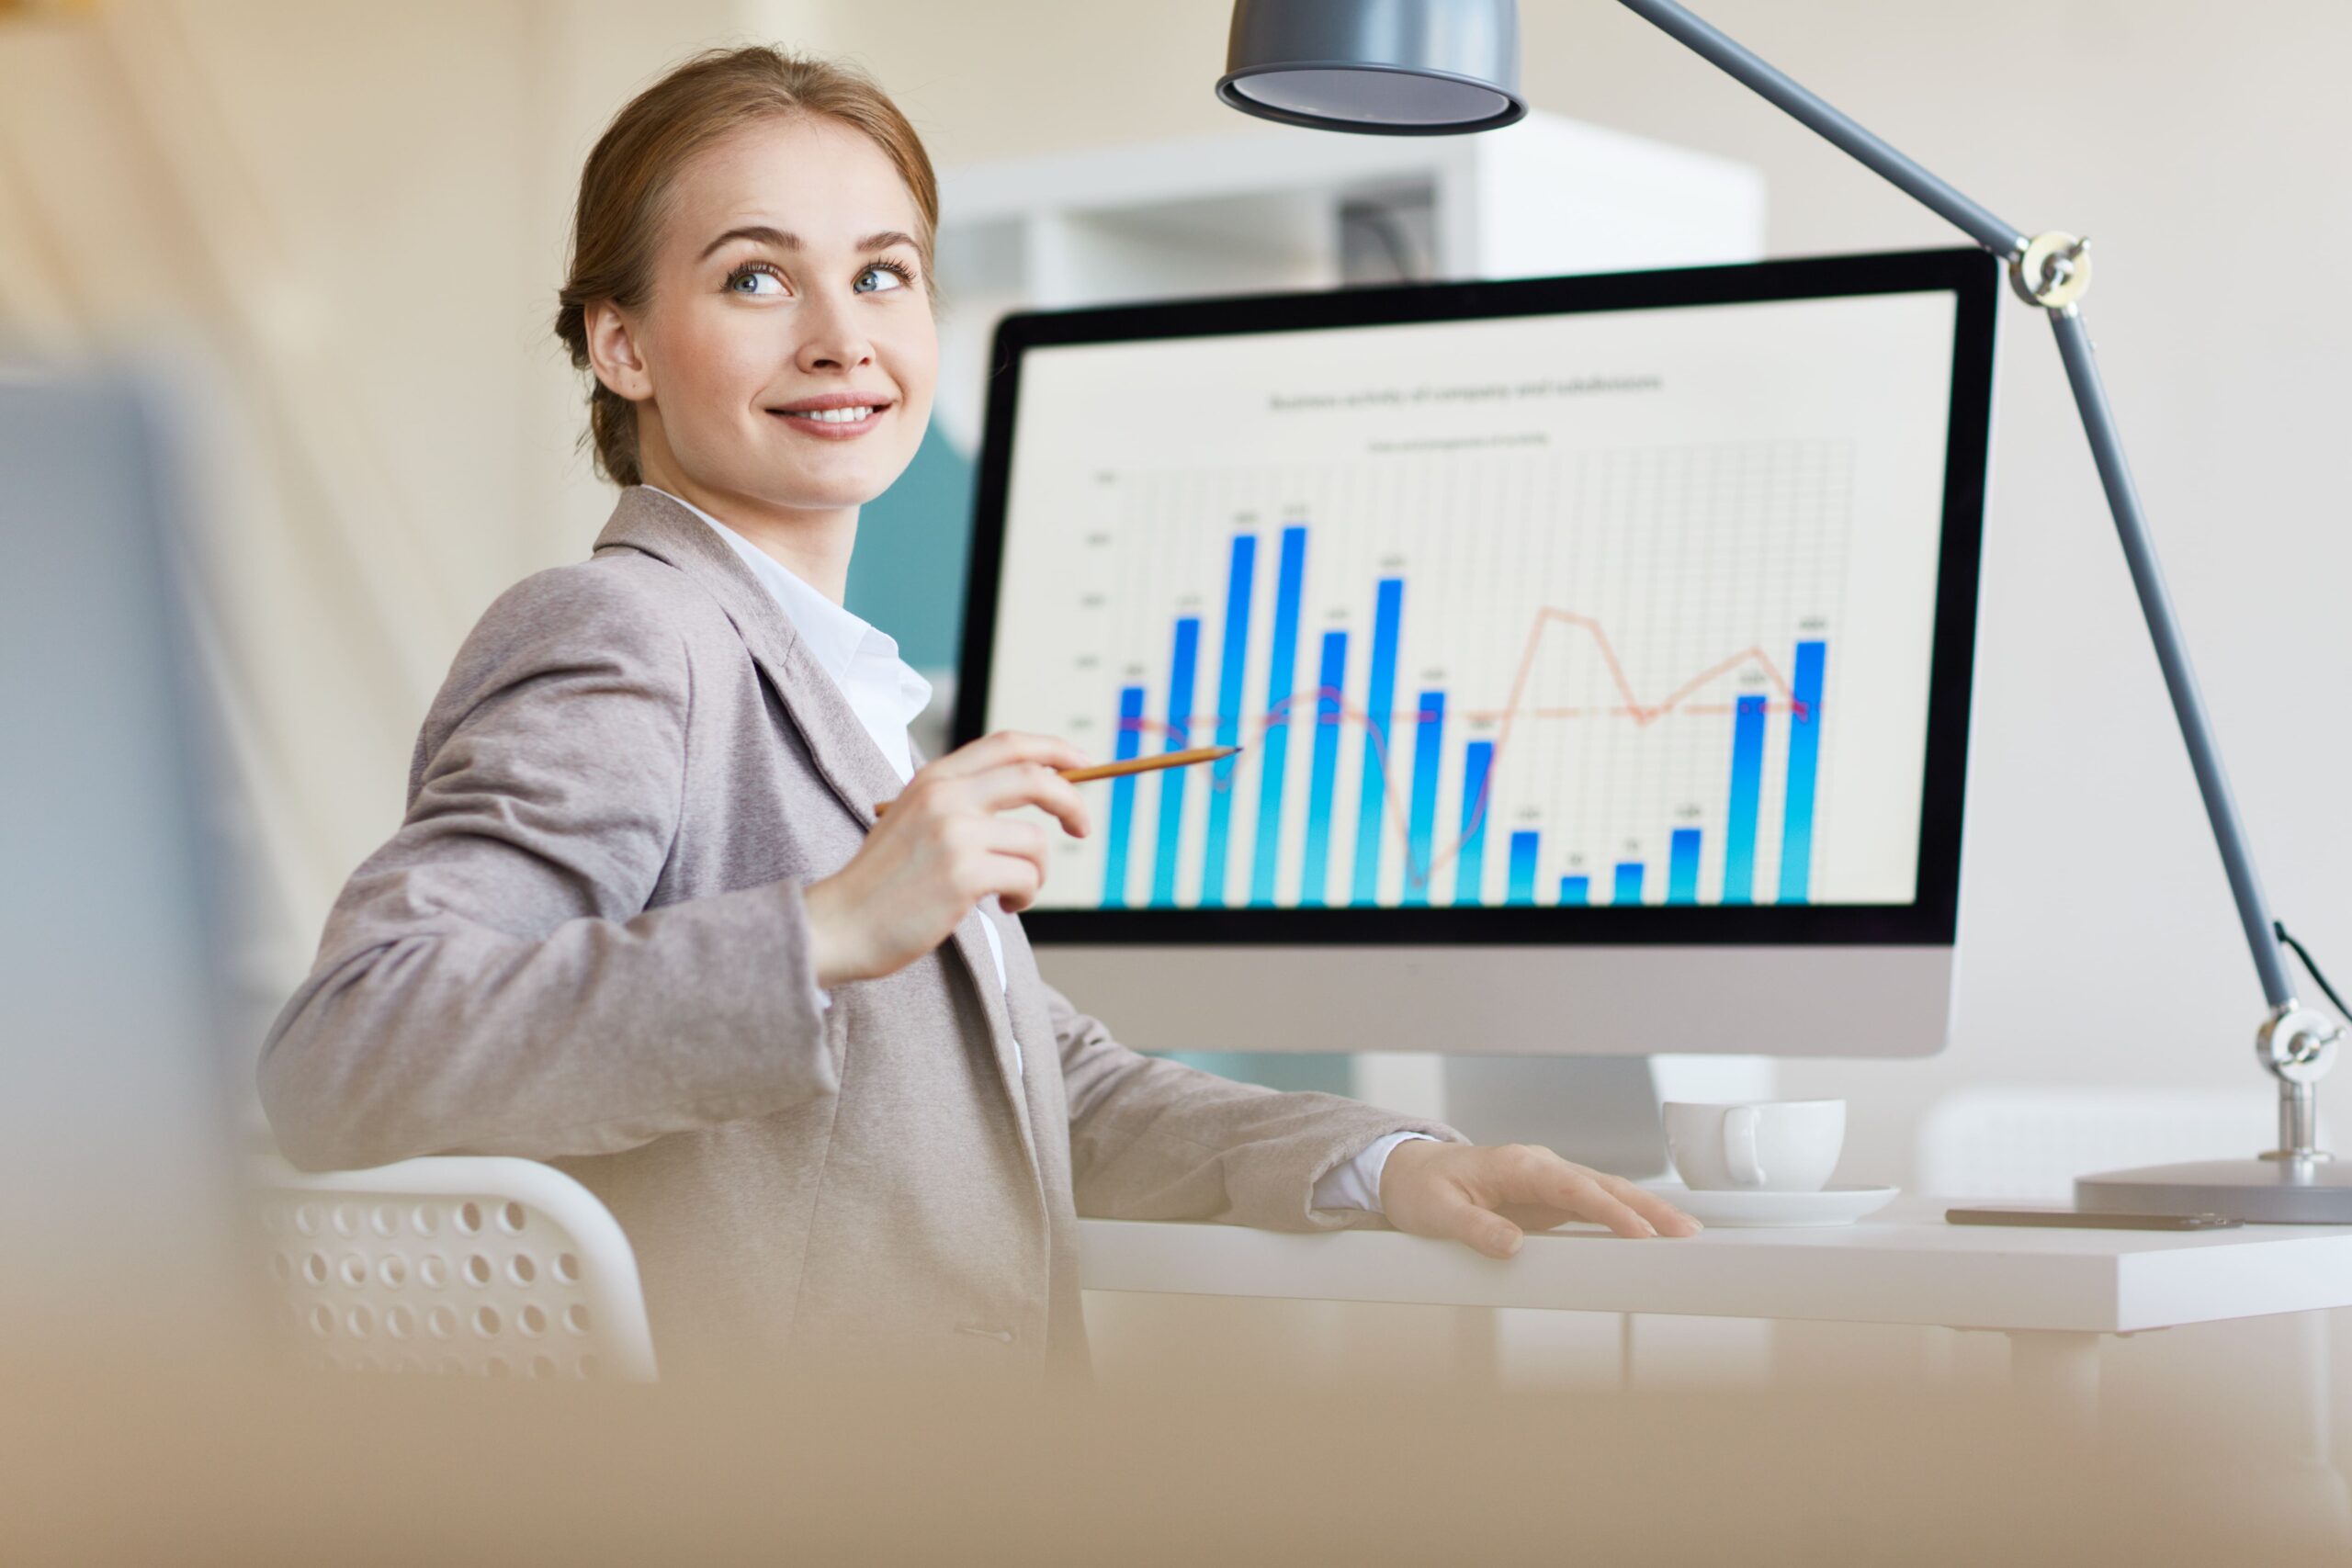 analista de dados ou cientista de dados: mulher no computador com gráfico de barras na tela